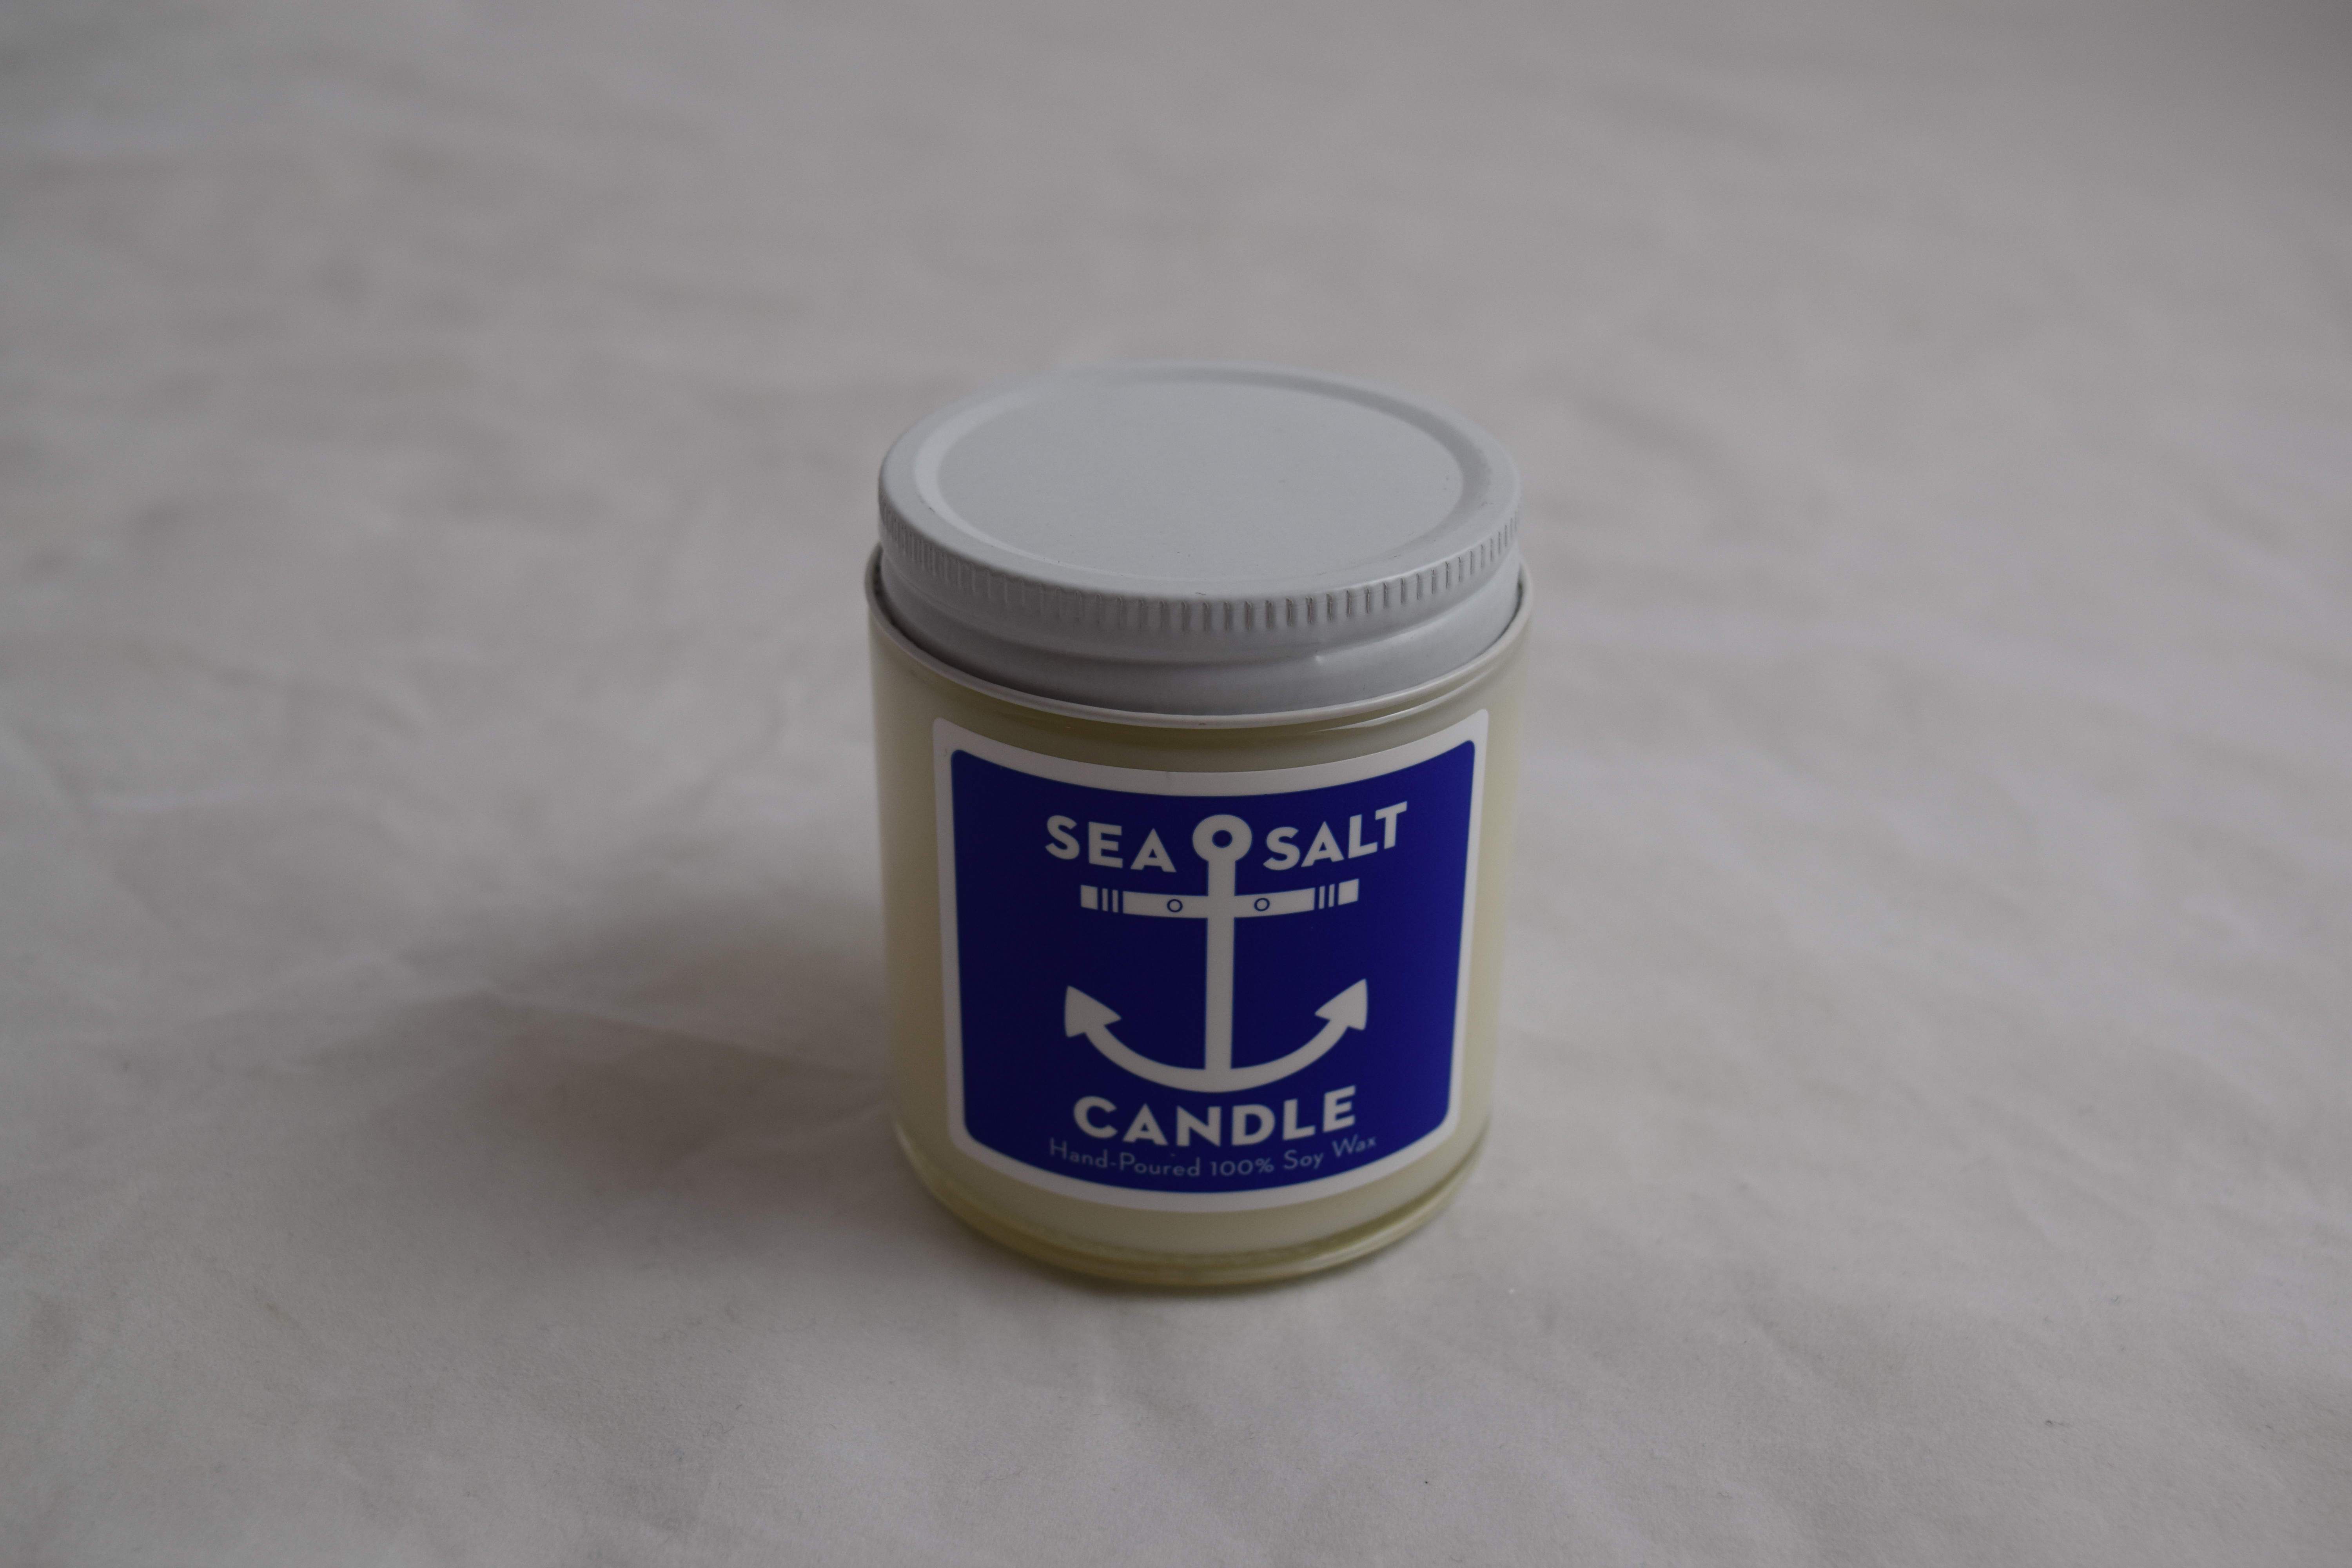 Sea salt candle